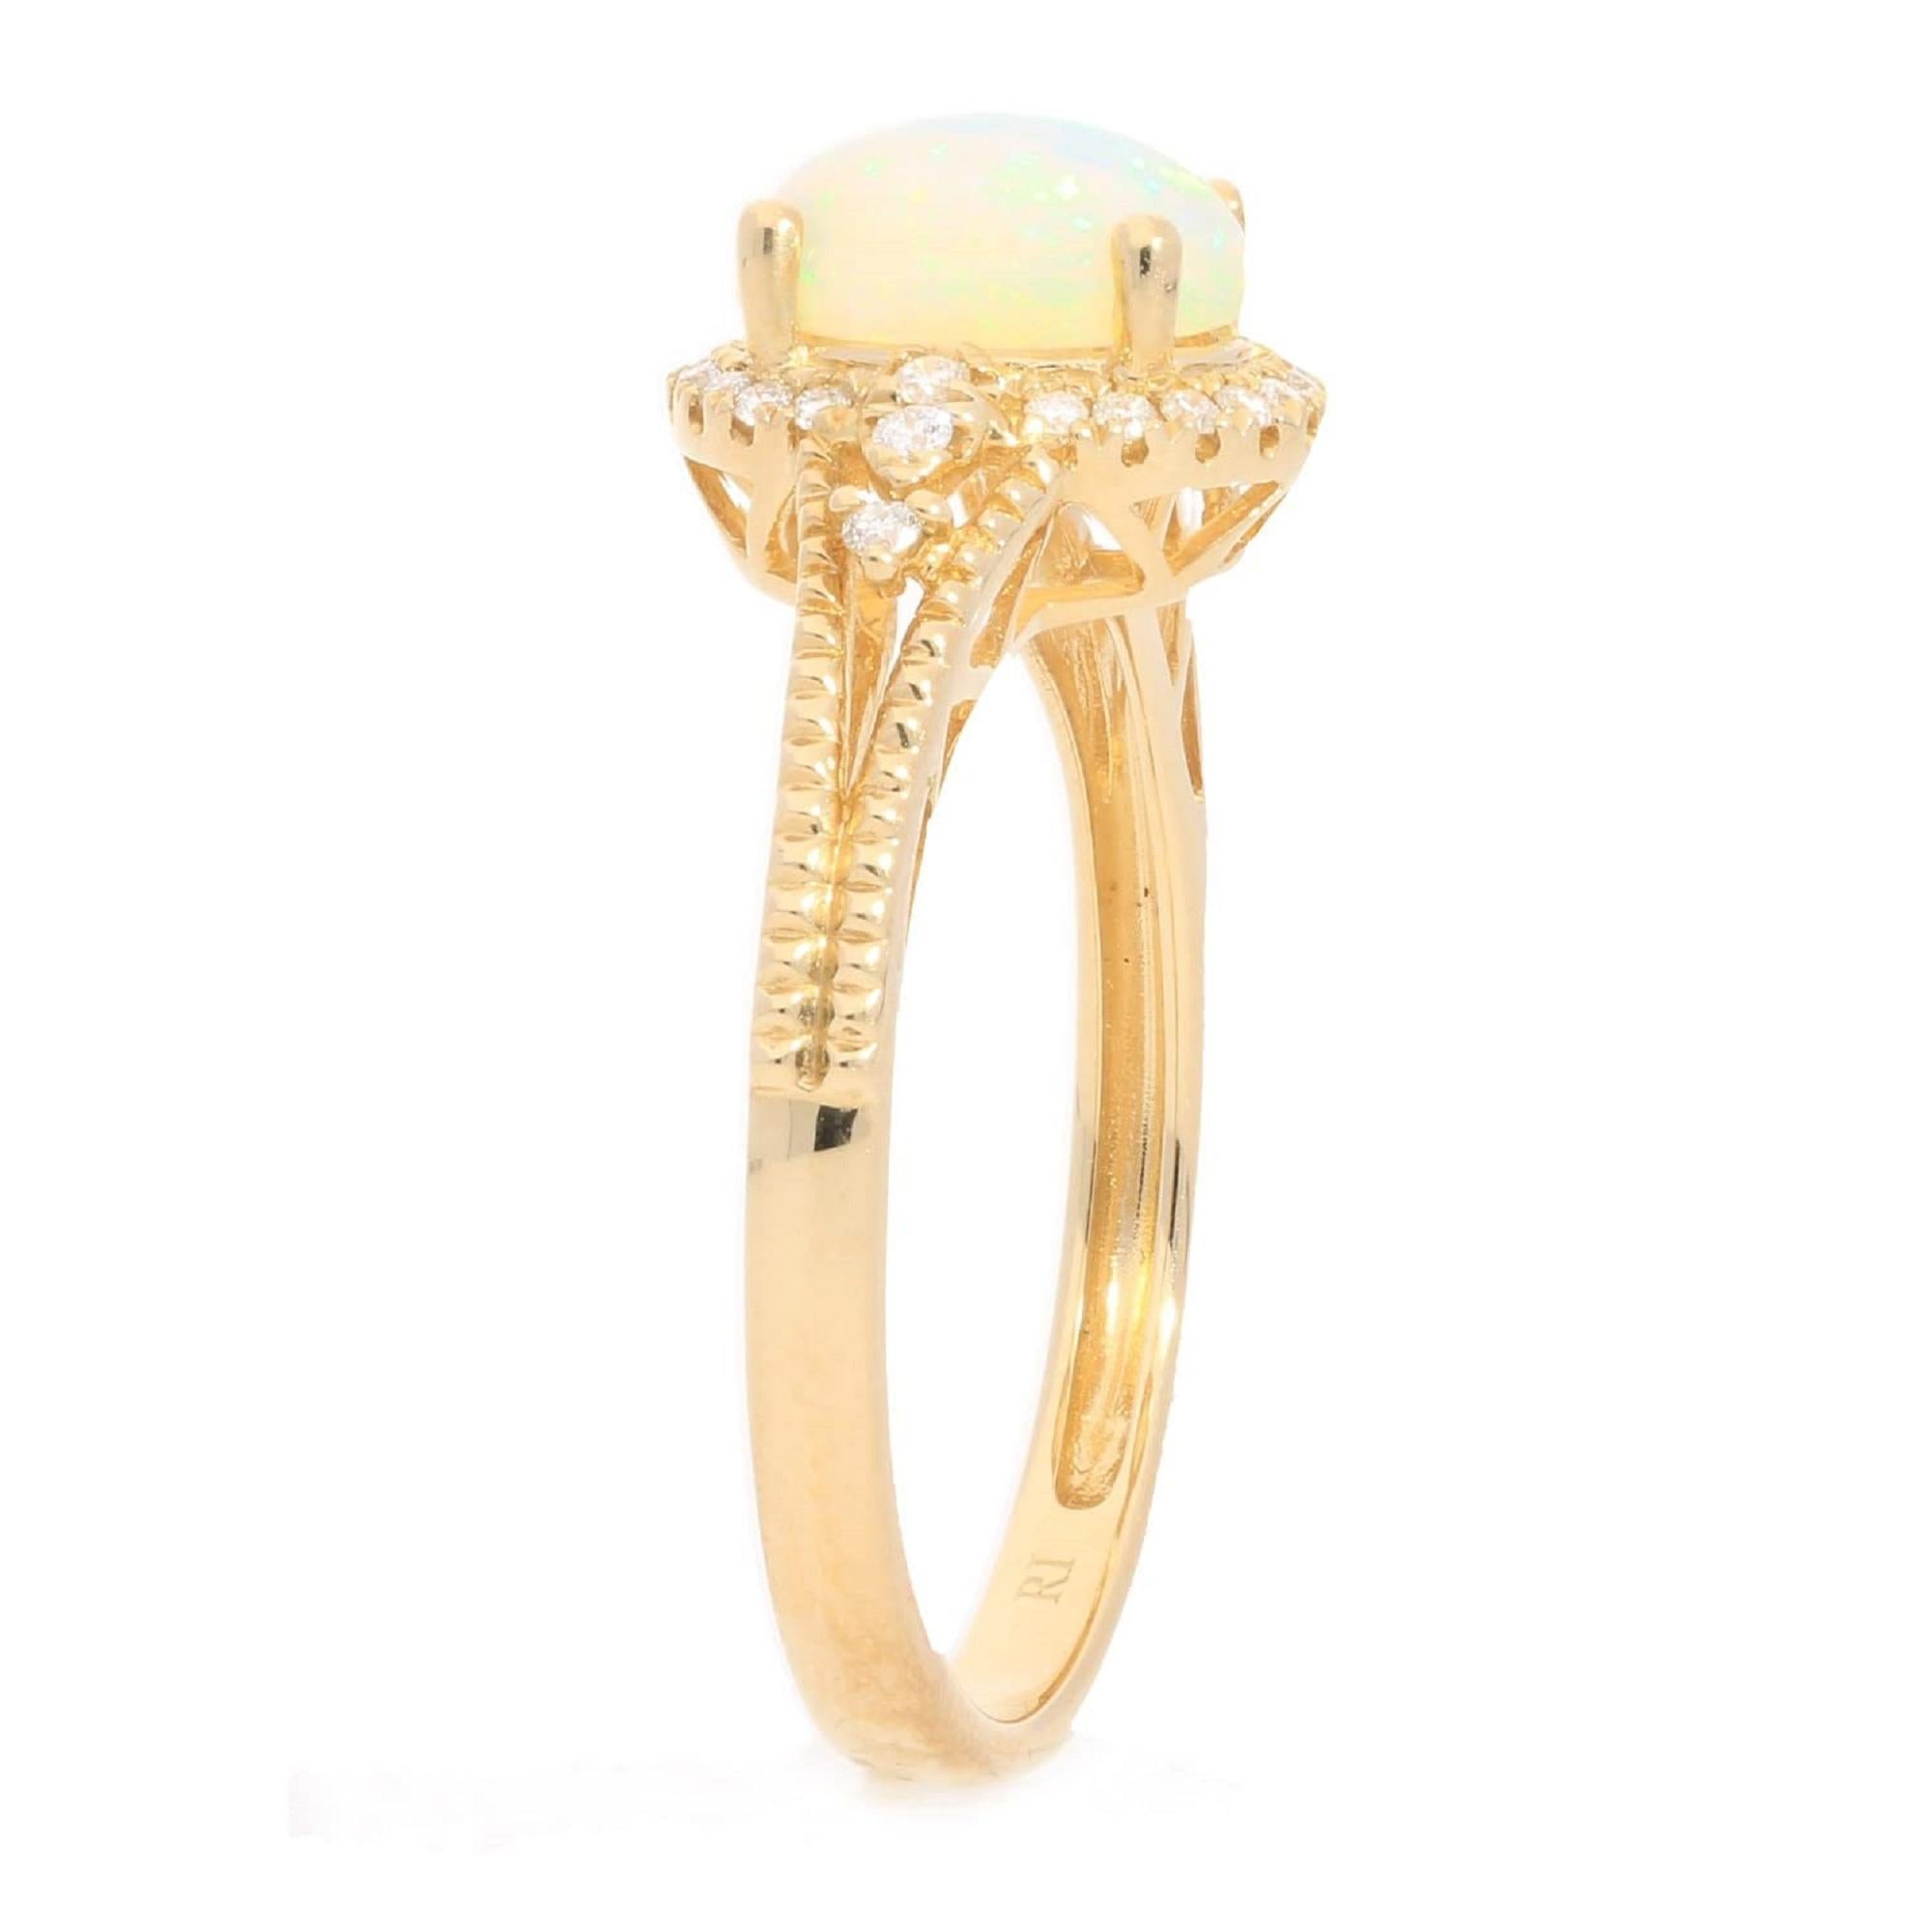 Décorez-vous d'élégance avec cette bague réalisée en or jaune 10 carats par Gin & Grace Ring. Cette bague est composée d'une opale éthiopienne ovale de 8x6 mm (1 pièce) de 0,80 carat et d'un diamant blanc de taille ronde (26 pièces) de 0,12 carat.